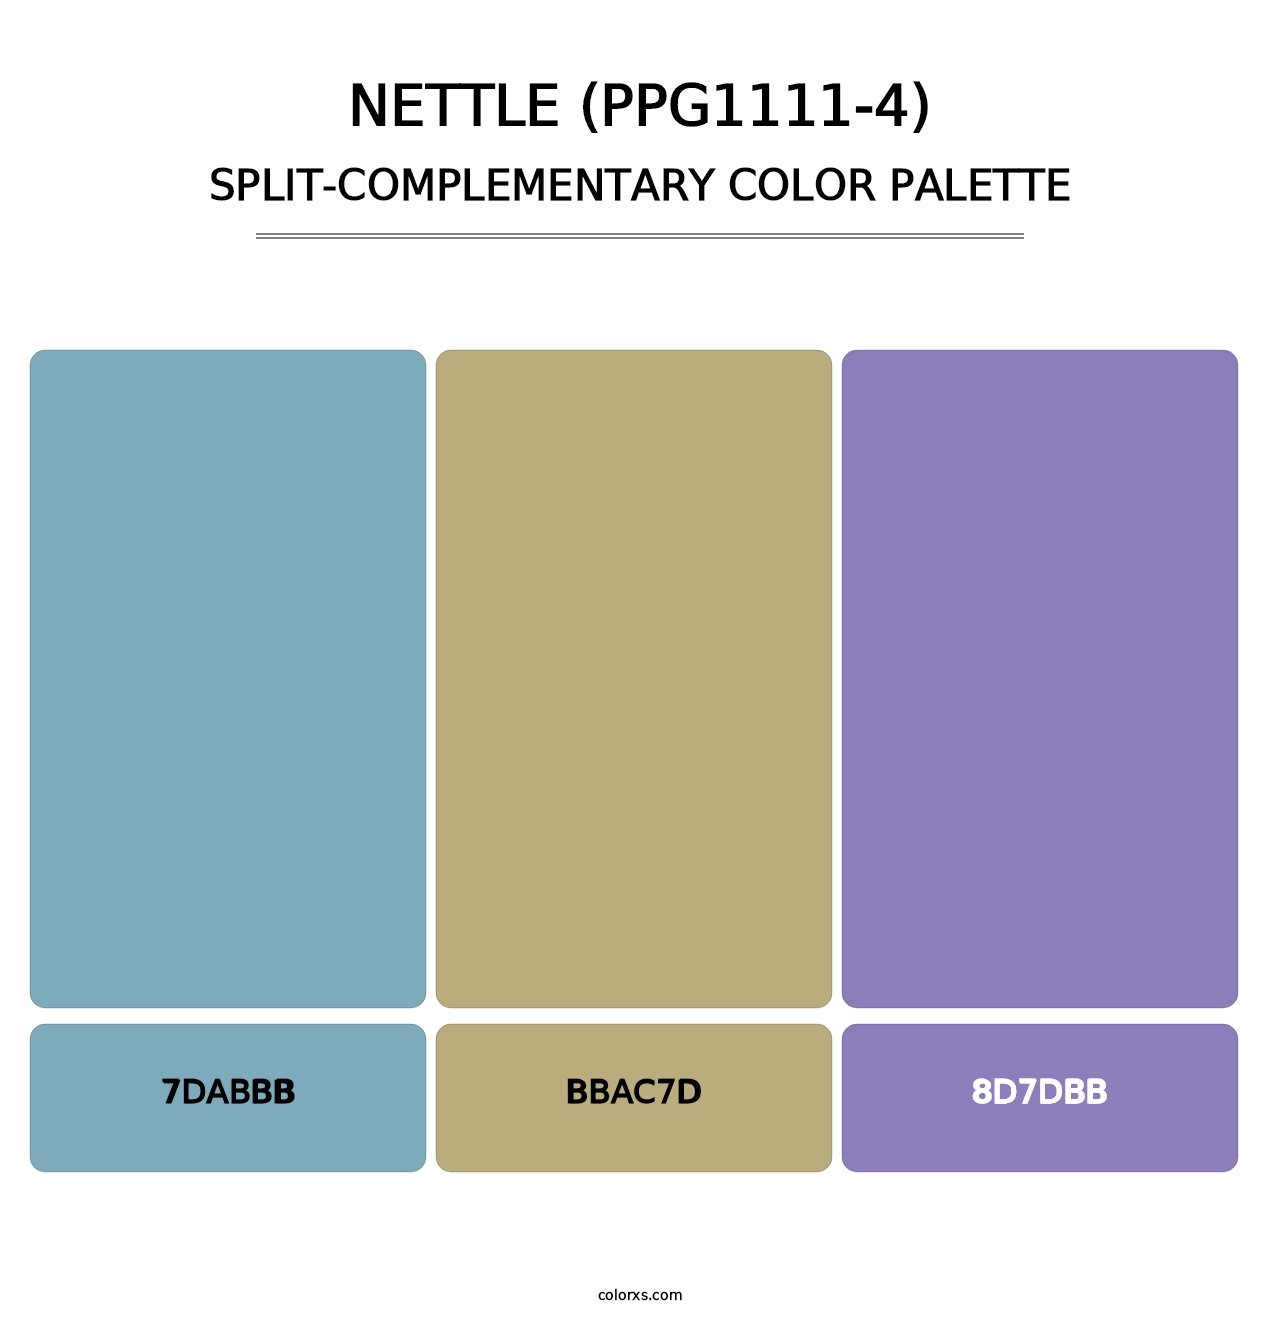 Nettle (PPG1111-4) - Split-Complementary Color Palette